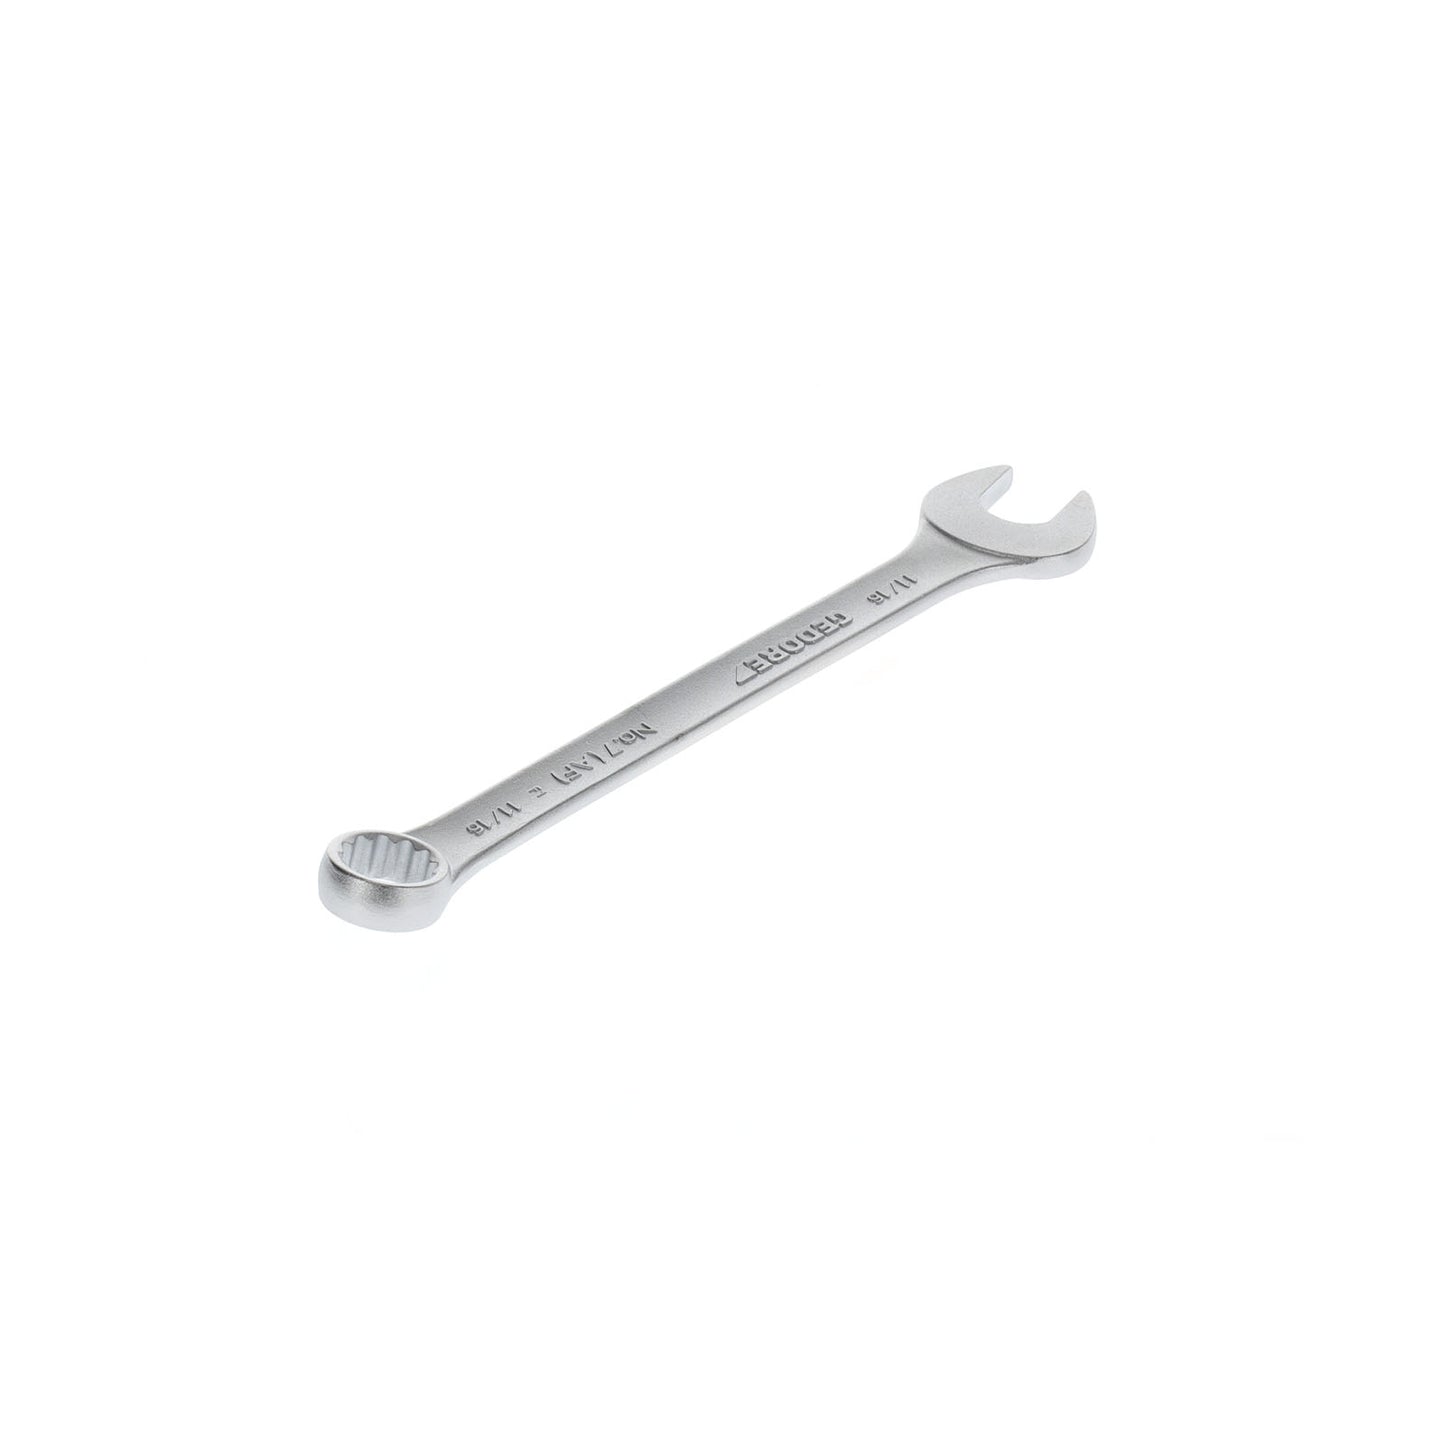 GEDORE 7 11/16AF - Combination Wrench, 11/16AF (6099860)